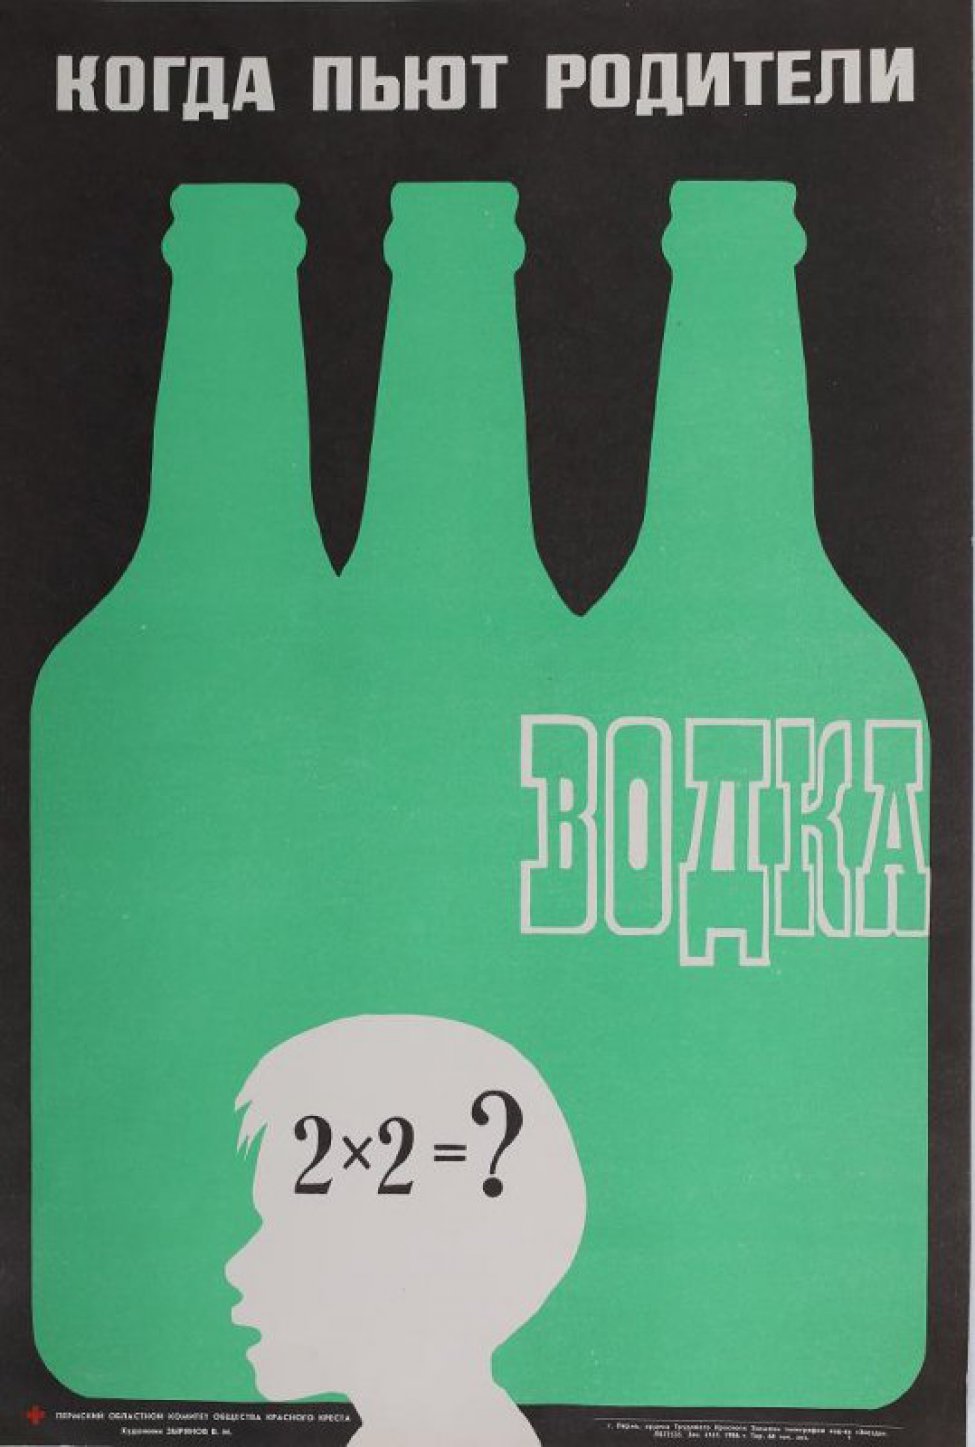 На черном фоне изображены три зеленые бутылки с надписью «Водка». По нижнему полю посередине - силуэтное профильное изображение головы ребенка с открытым ртом. По верхнему полю шрифтовая композиция: «Когда пьют родители».